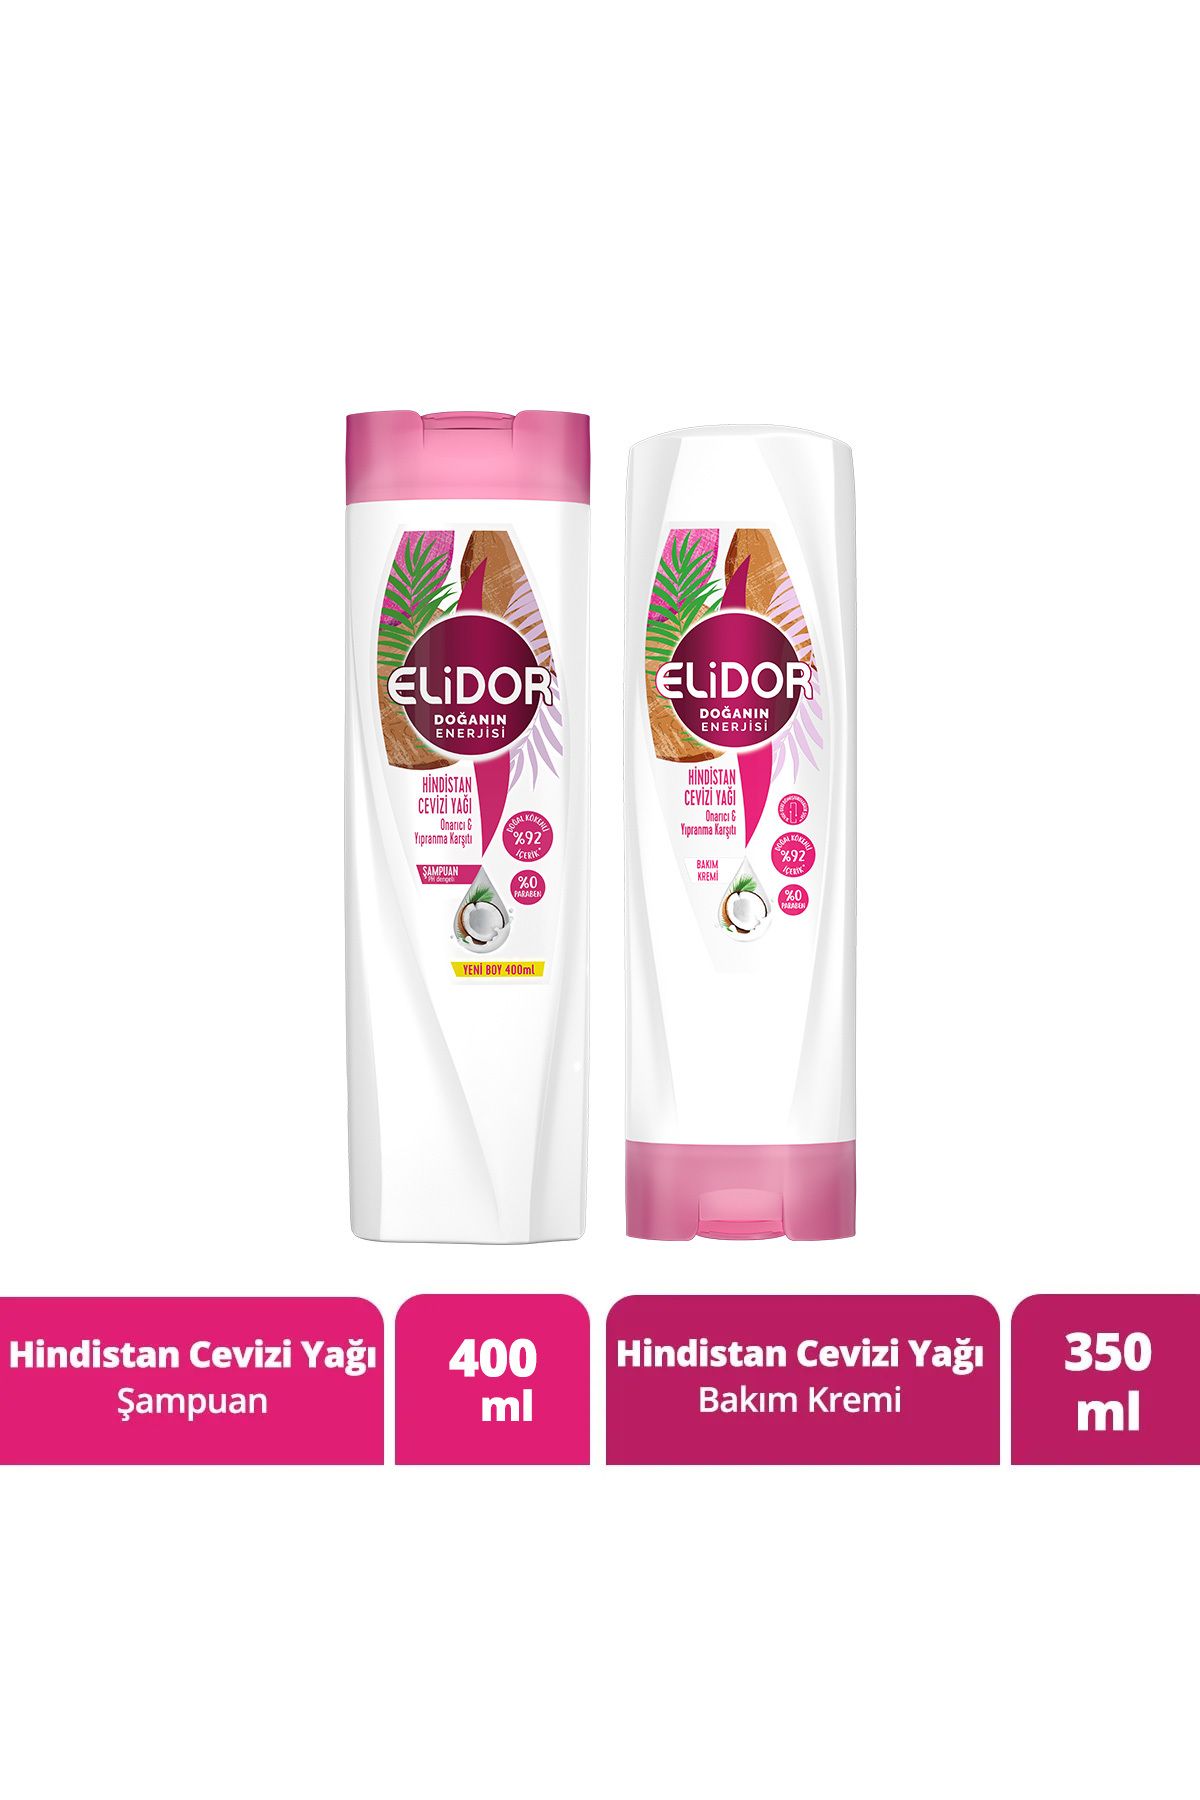 Elidor Doğanın Enerjisi Saç Bakım Şampuanı Hindistan Cevizi Yağı 400 ml Saç Bakım Kremi 350 ml